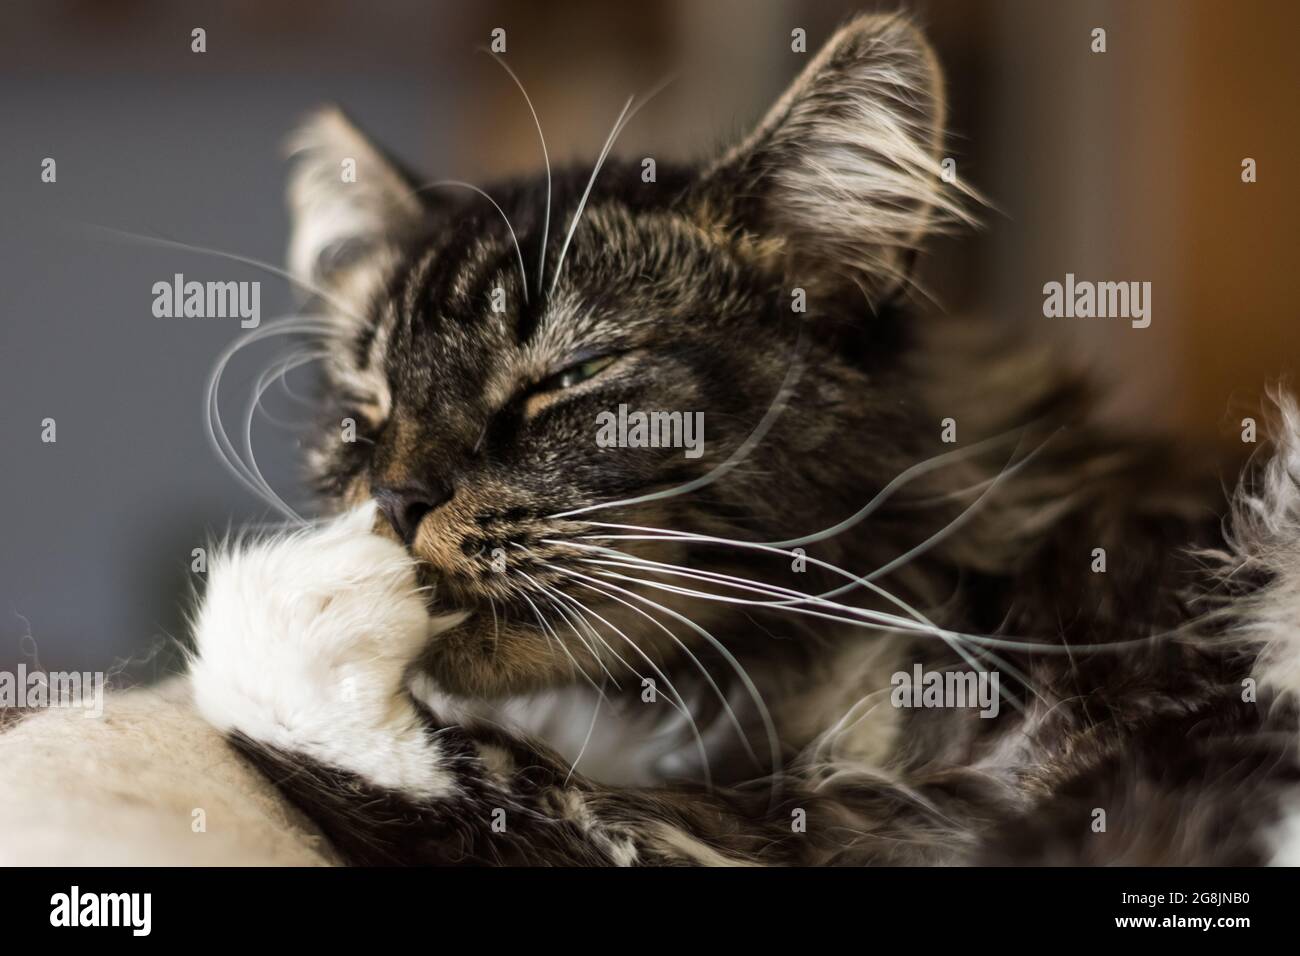 cher chat de maine coon se nettoie sur la patte blanche Banque D'Images